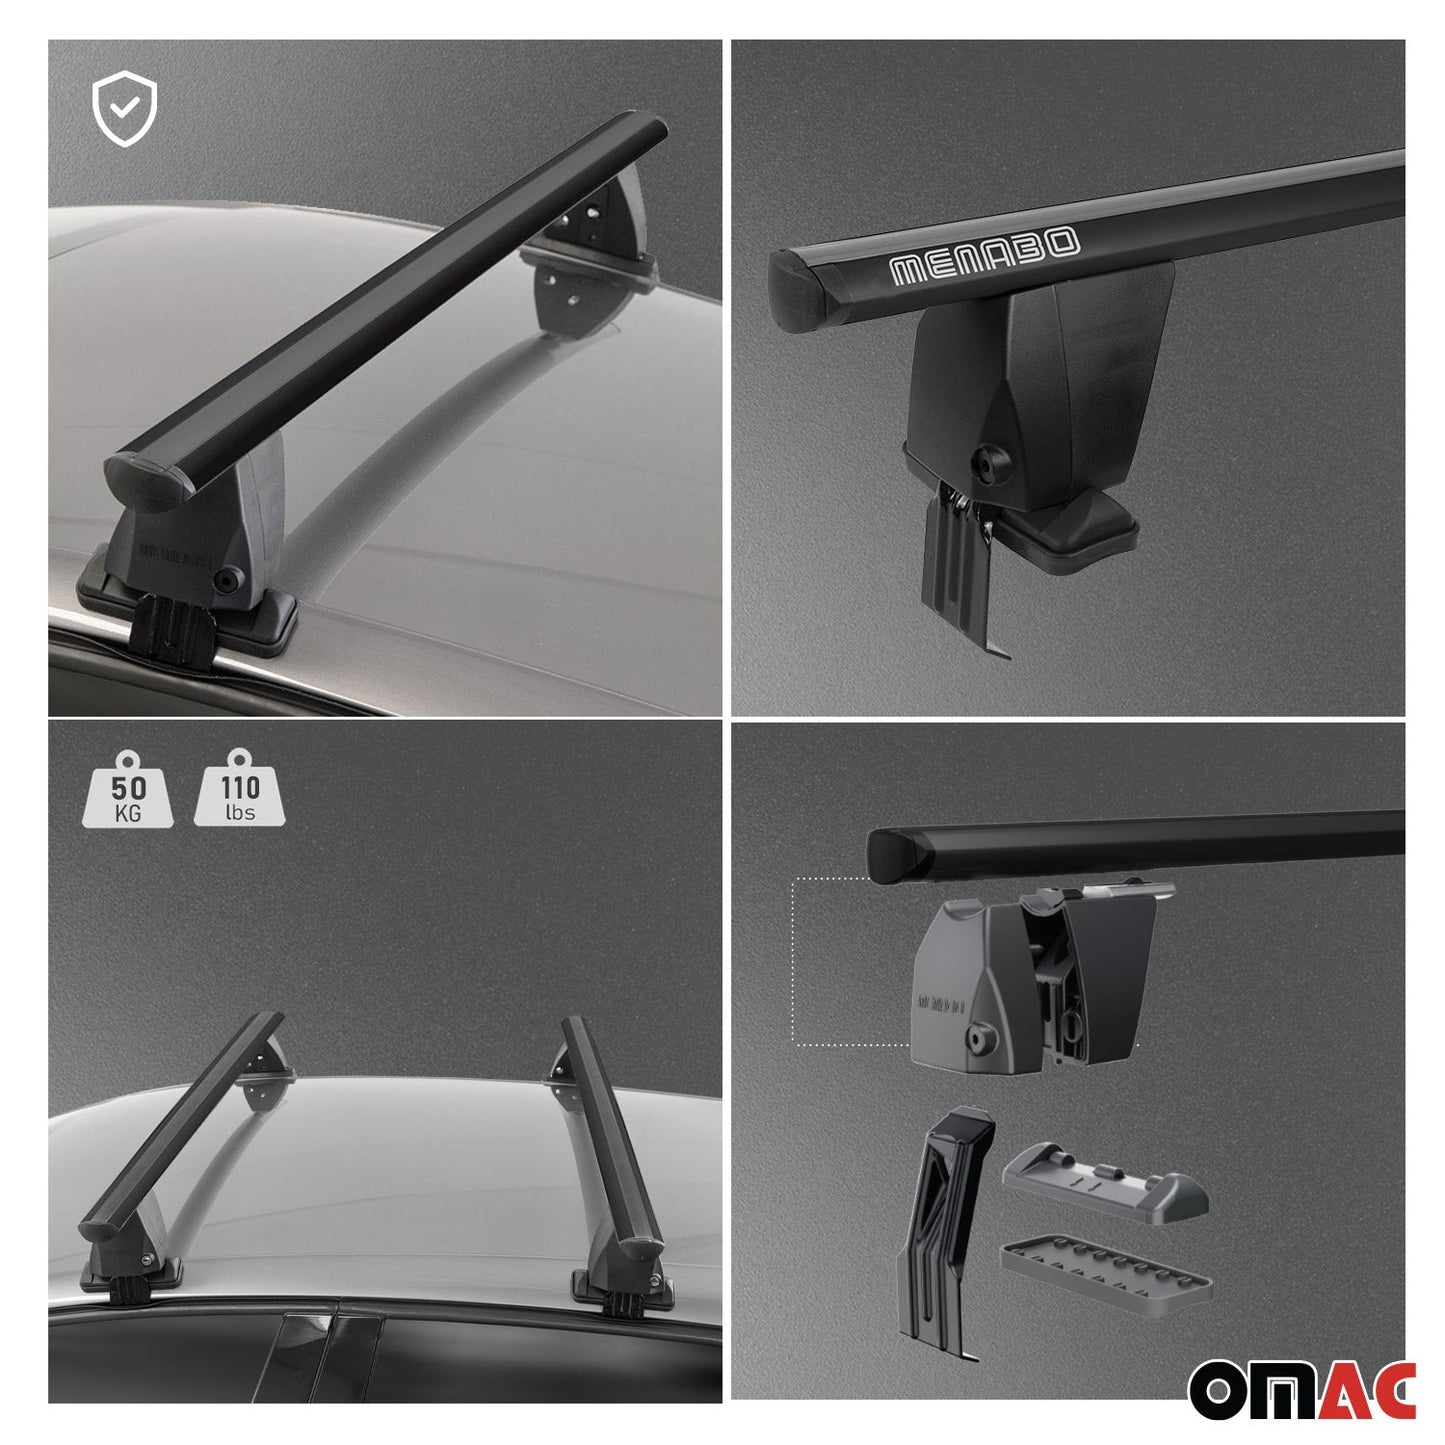 OMAC Top Roof Racks Cross Bars fits Ford Focus Hatchback 2012-2018 2Pcs Black Alu U016292